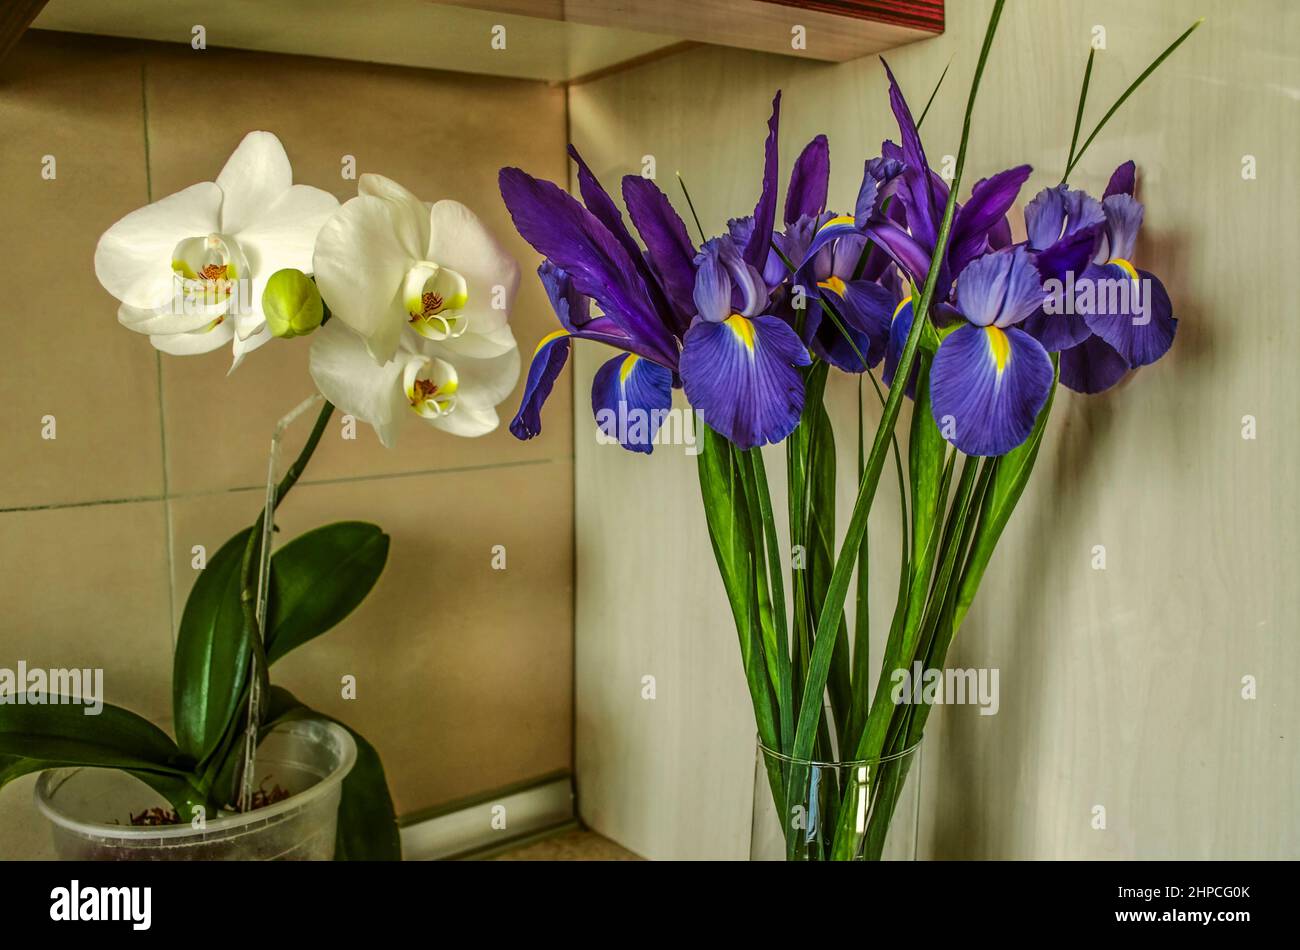 In der Ecke auf dem Küchentisch befinden sich ein Strauß von Purpur mit gelben Zentren von Iris in einer Glaskolbe und ein Topf mit blühenden großen weißen Orchideen. Stockfoto